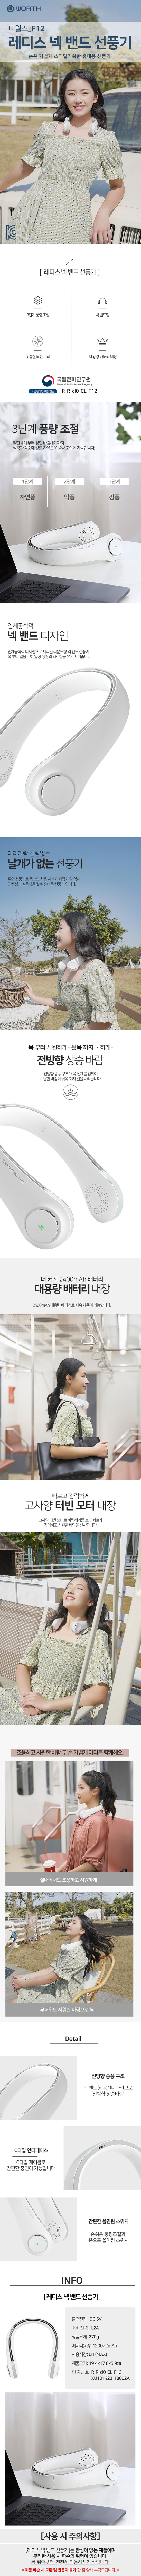 디월스 레디스 넥 밴드 선풍기 F12 목풍기 휴대용선풍기 (최소 구매 3개)